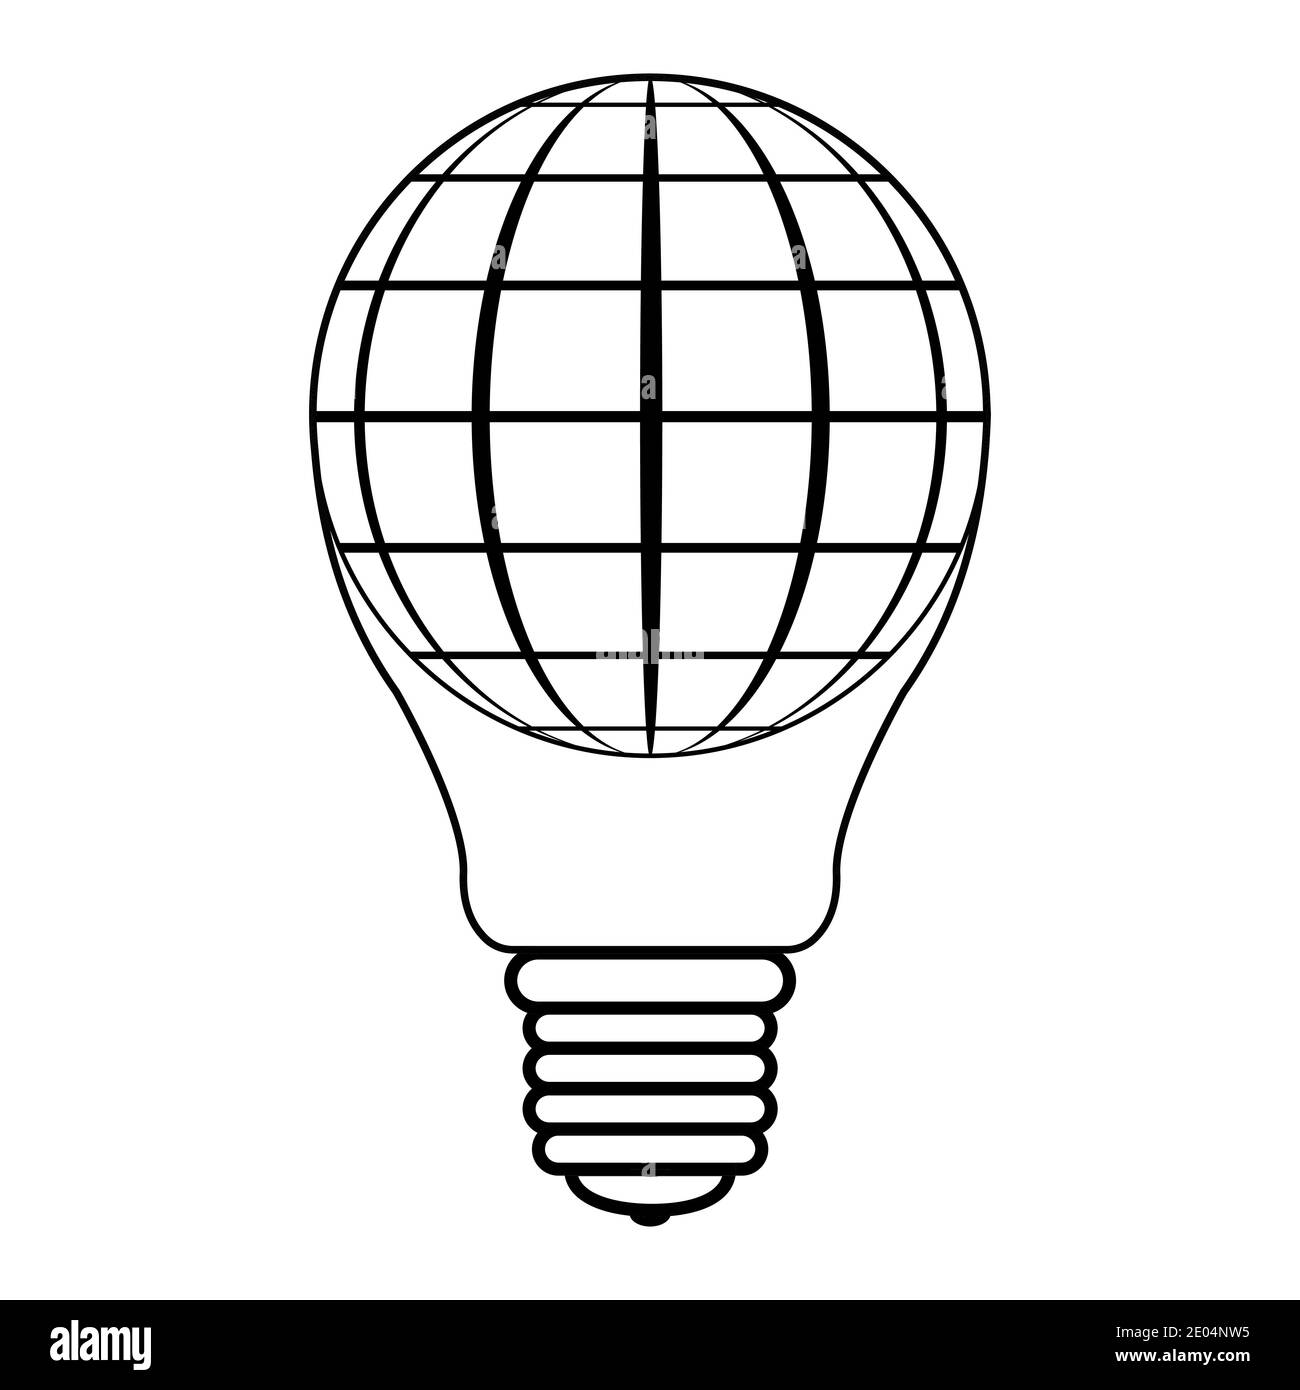 icône logo ballon dans la forme ampoules et sphères globe planète terre, vecteur ampoule ballon concept de la paix, des affaires réussies et paisible Illustration de Vecteur